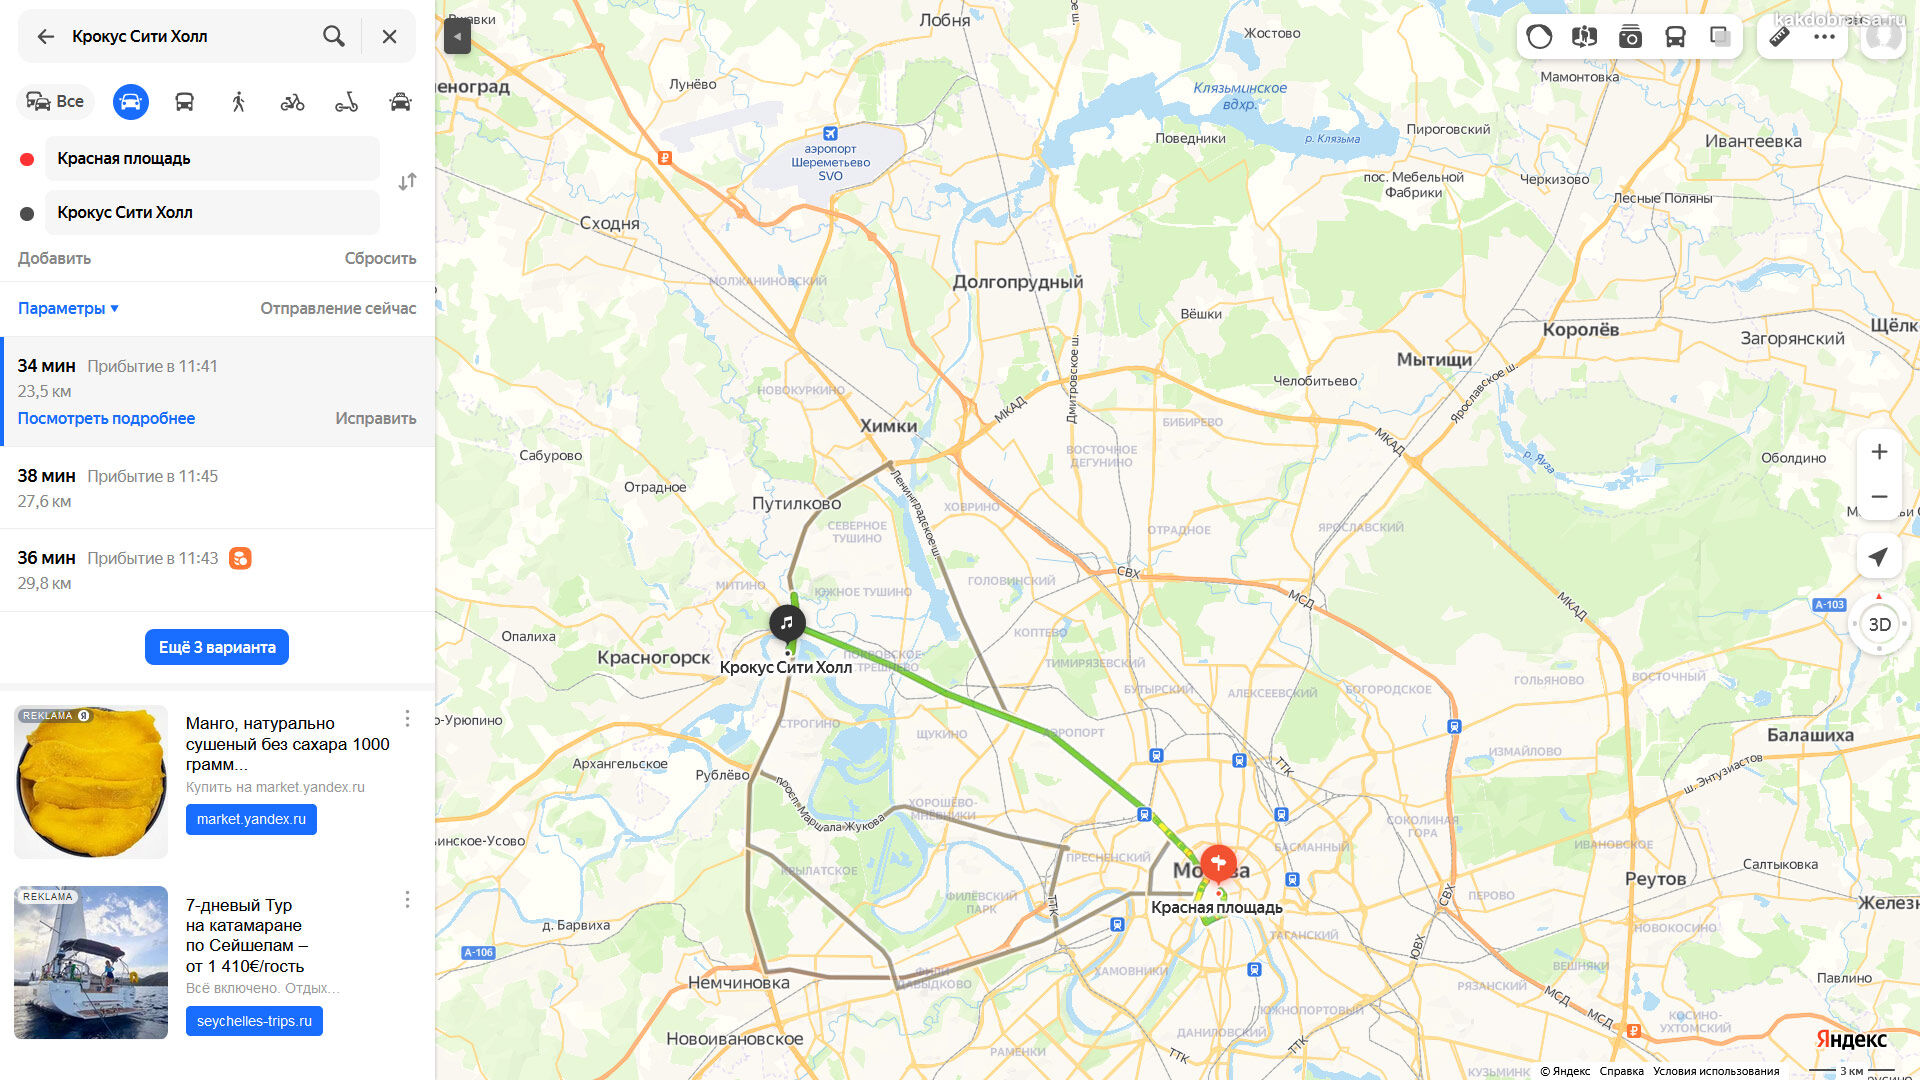 Крокус на карте Москвы. Крокус Сити на карте Москвы. Крокус Сити Холл на карте Москвы. Крокус Сити Холл станция метро ближайшее.